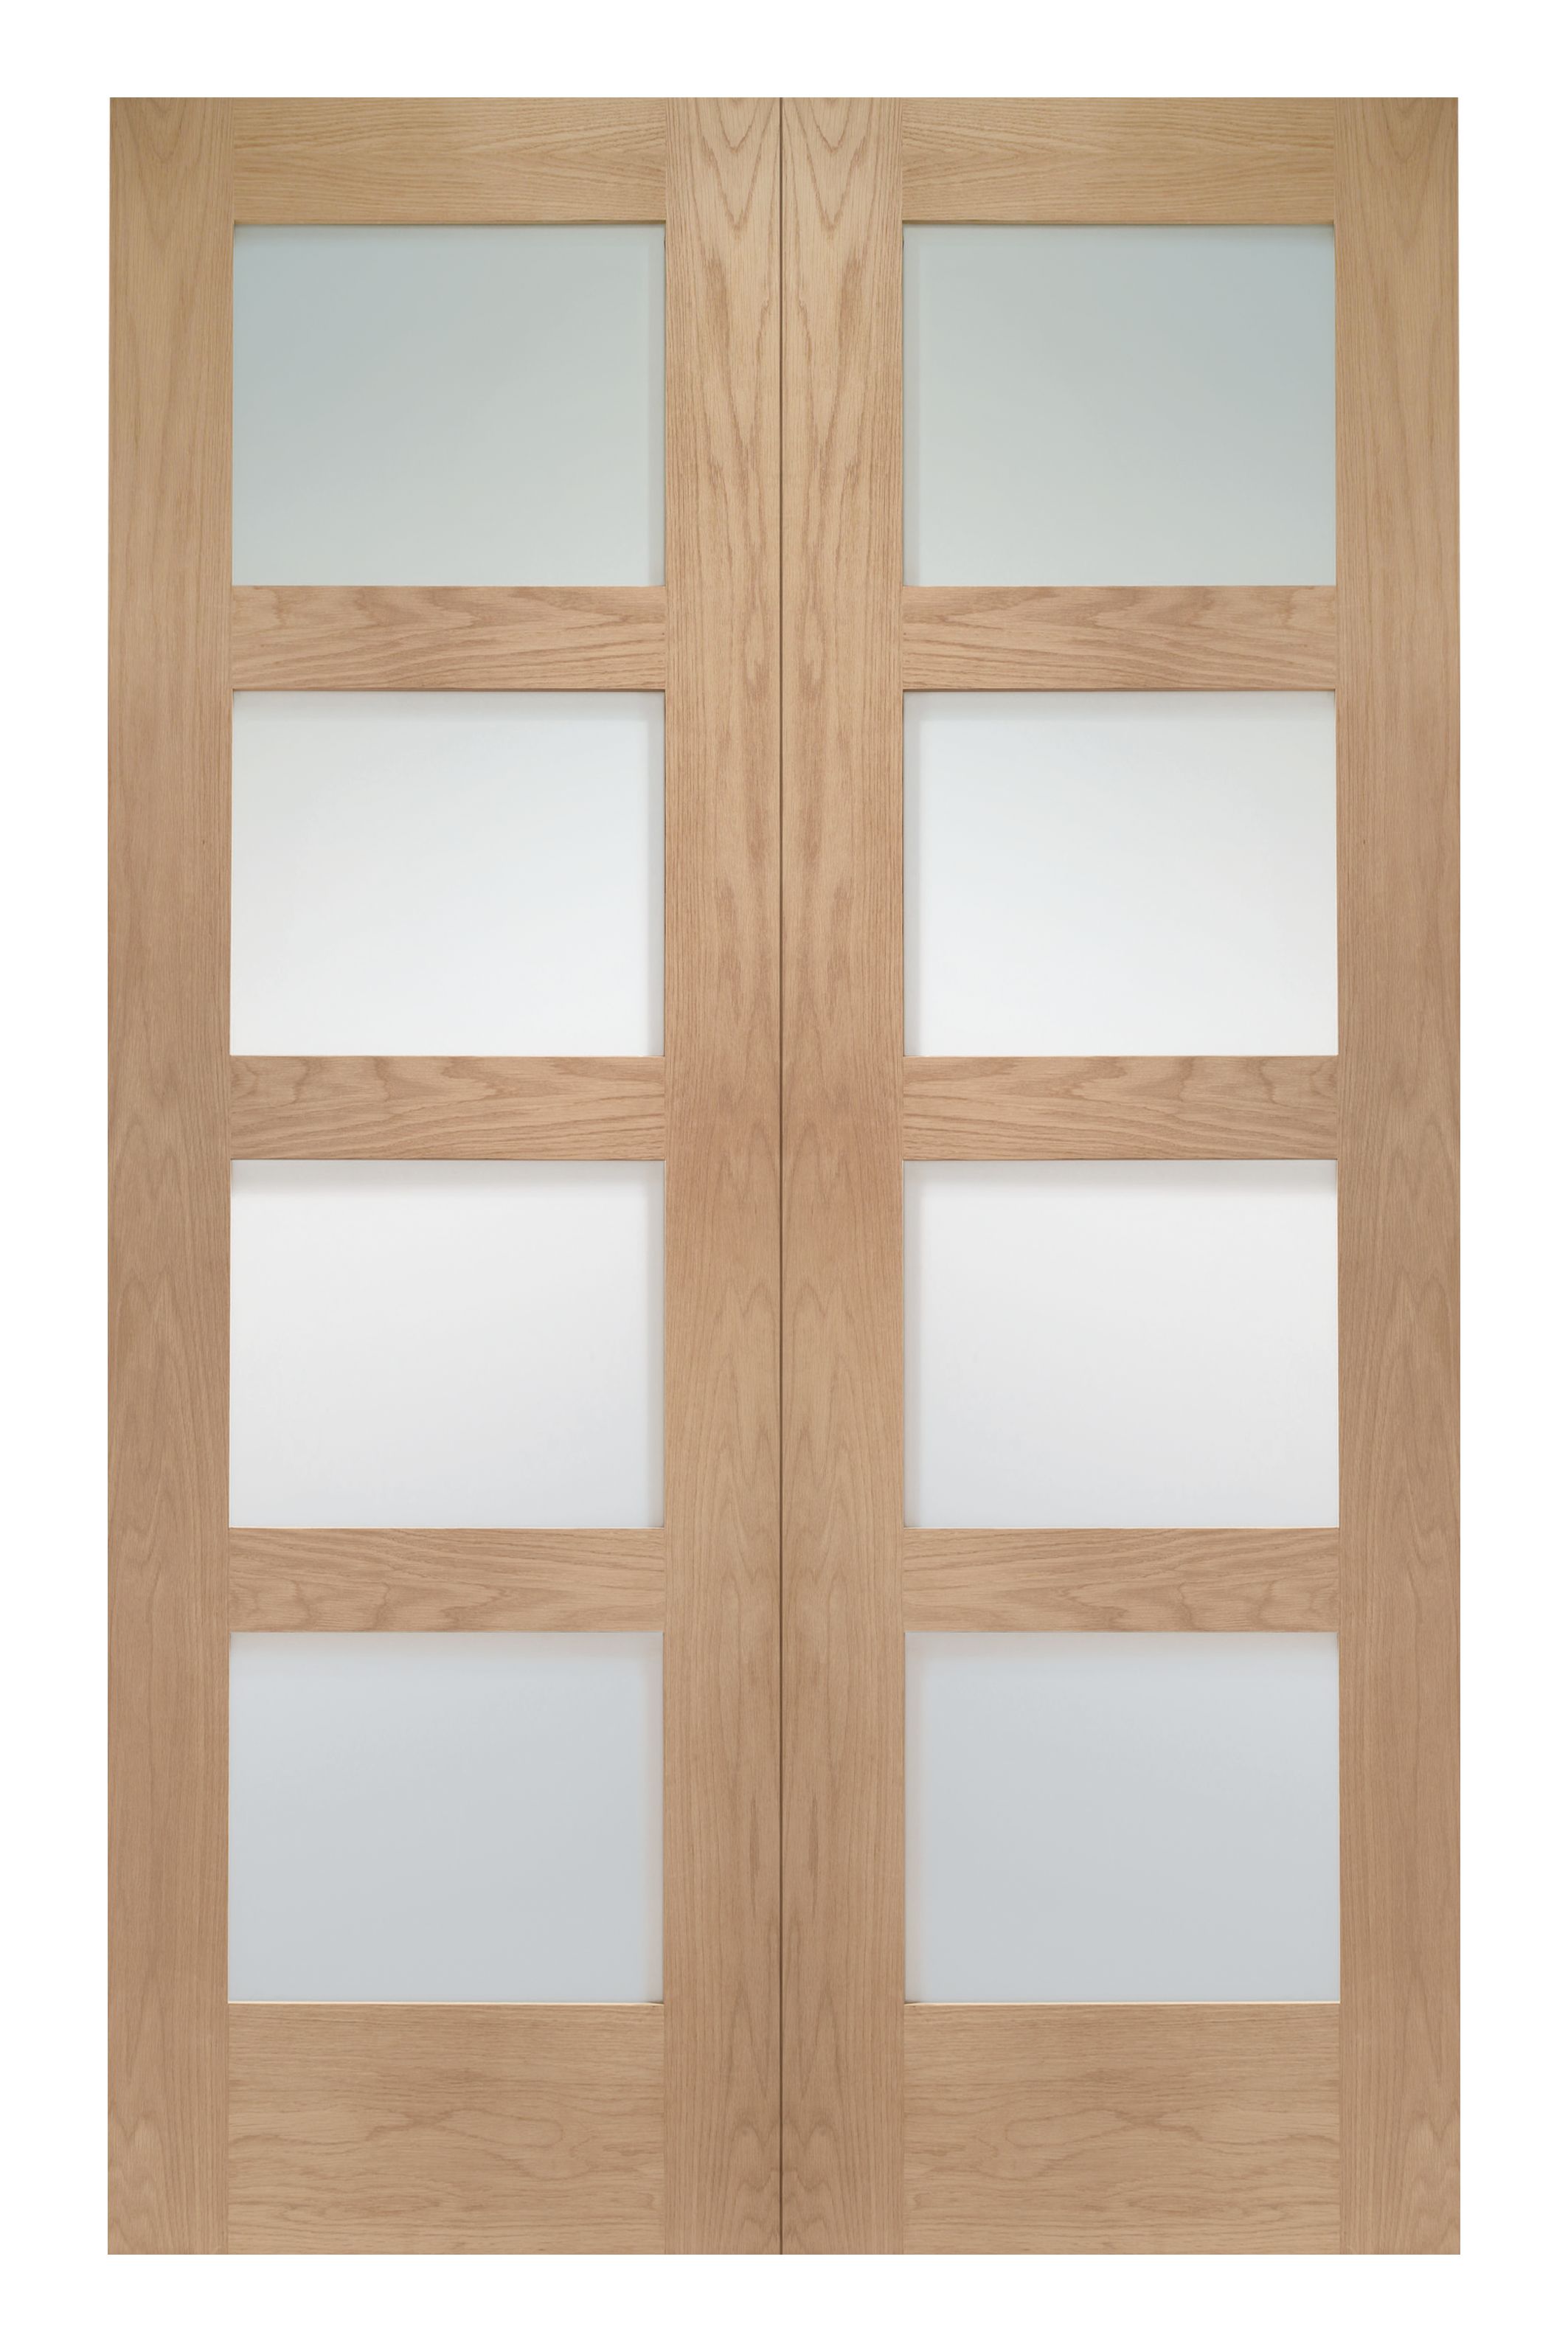 Image of Wickes Marlow Fully Glazed Oak 4 Panel Rebated Internal Door Pair - 1981 x 1220mm